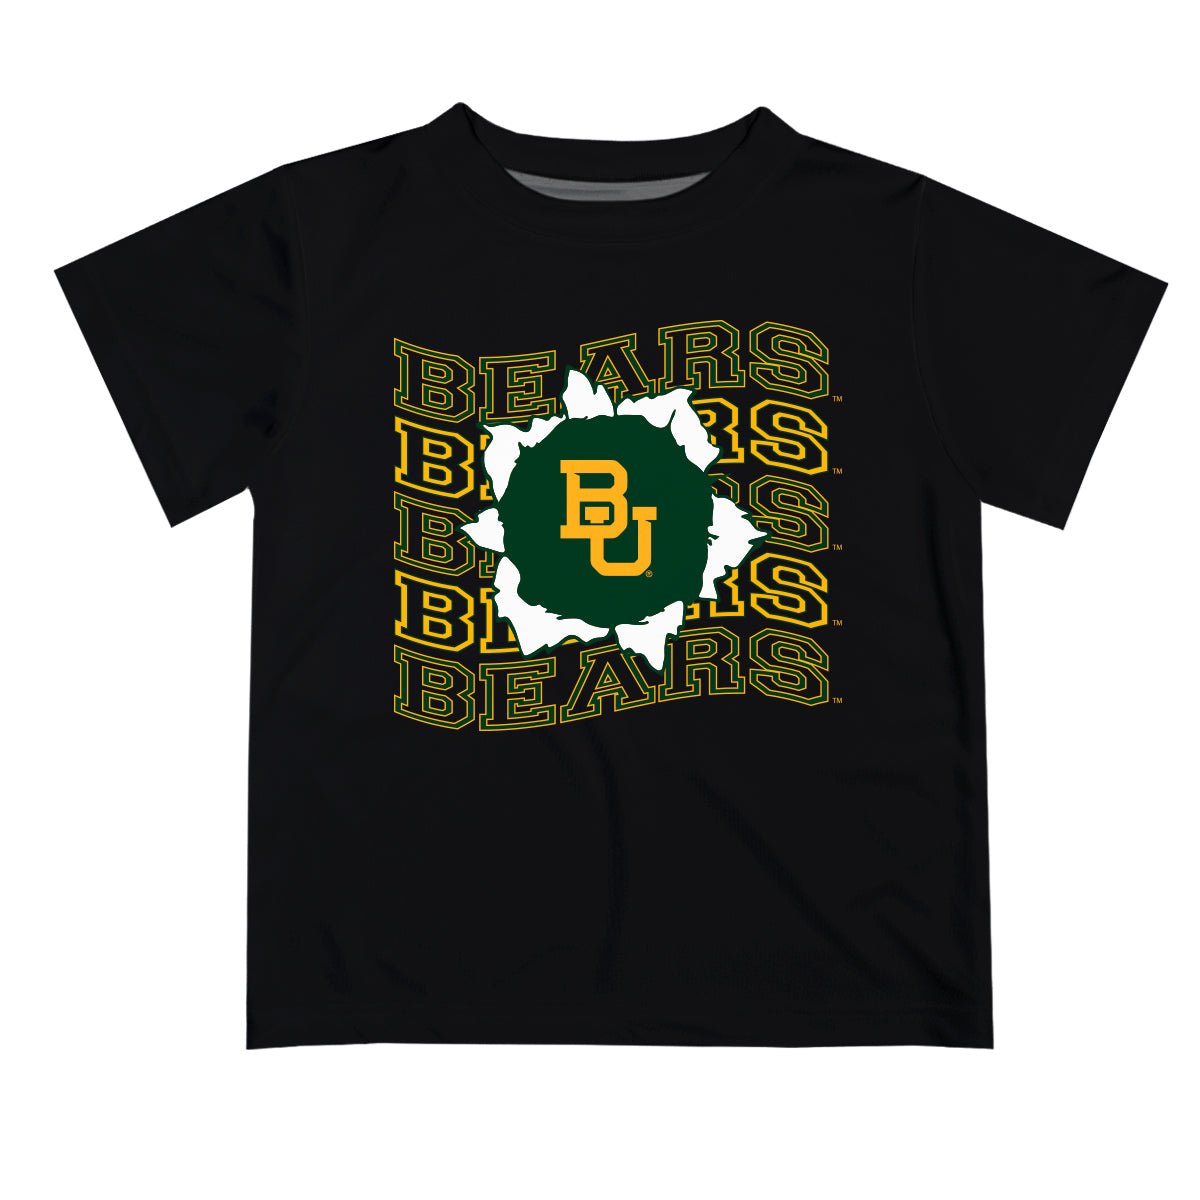 Baylor Bears Vive La Fete Black Art V1 Short Sleeve Tee Shirt